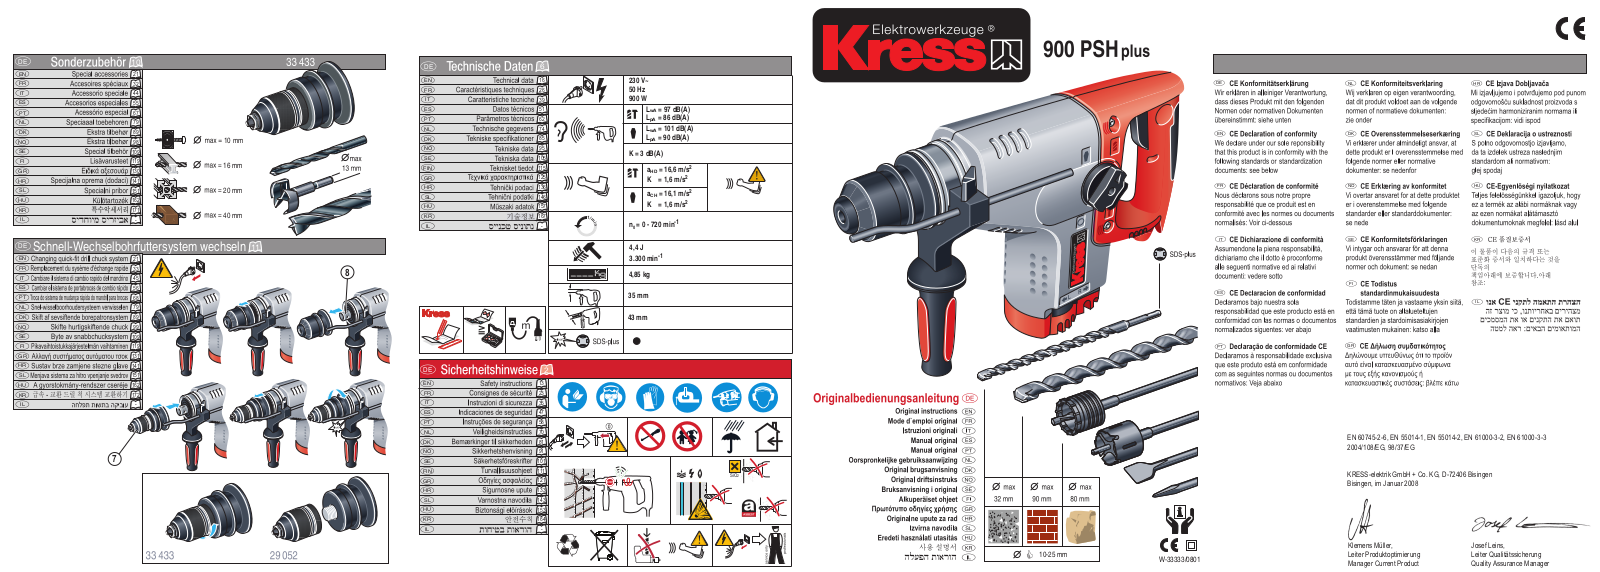 KRESS 900 PSH PLUS User Manual